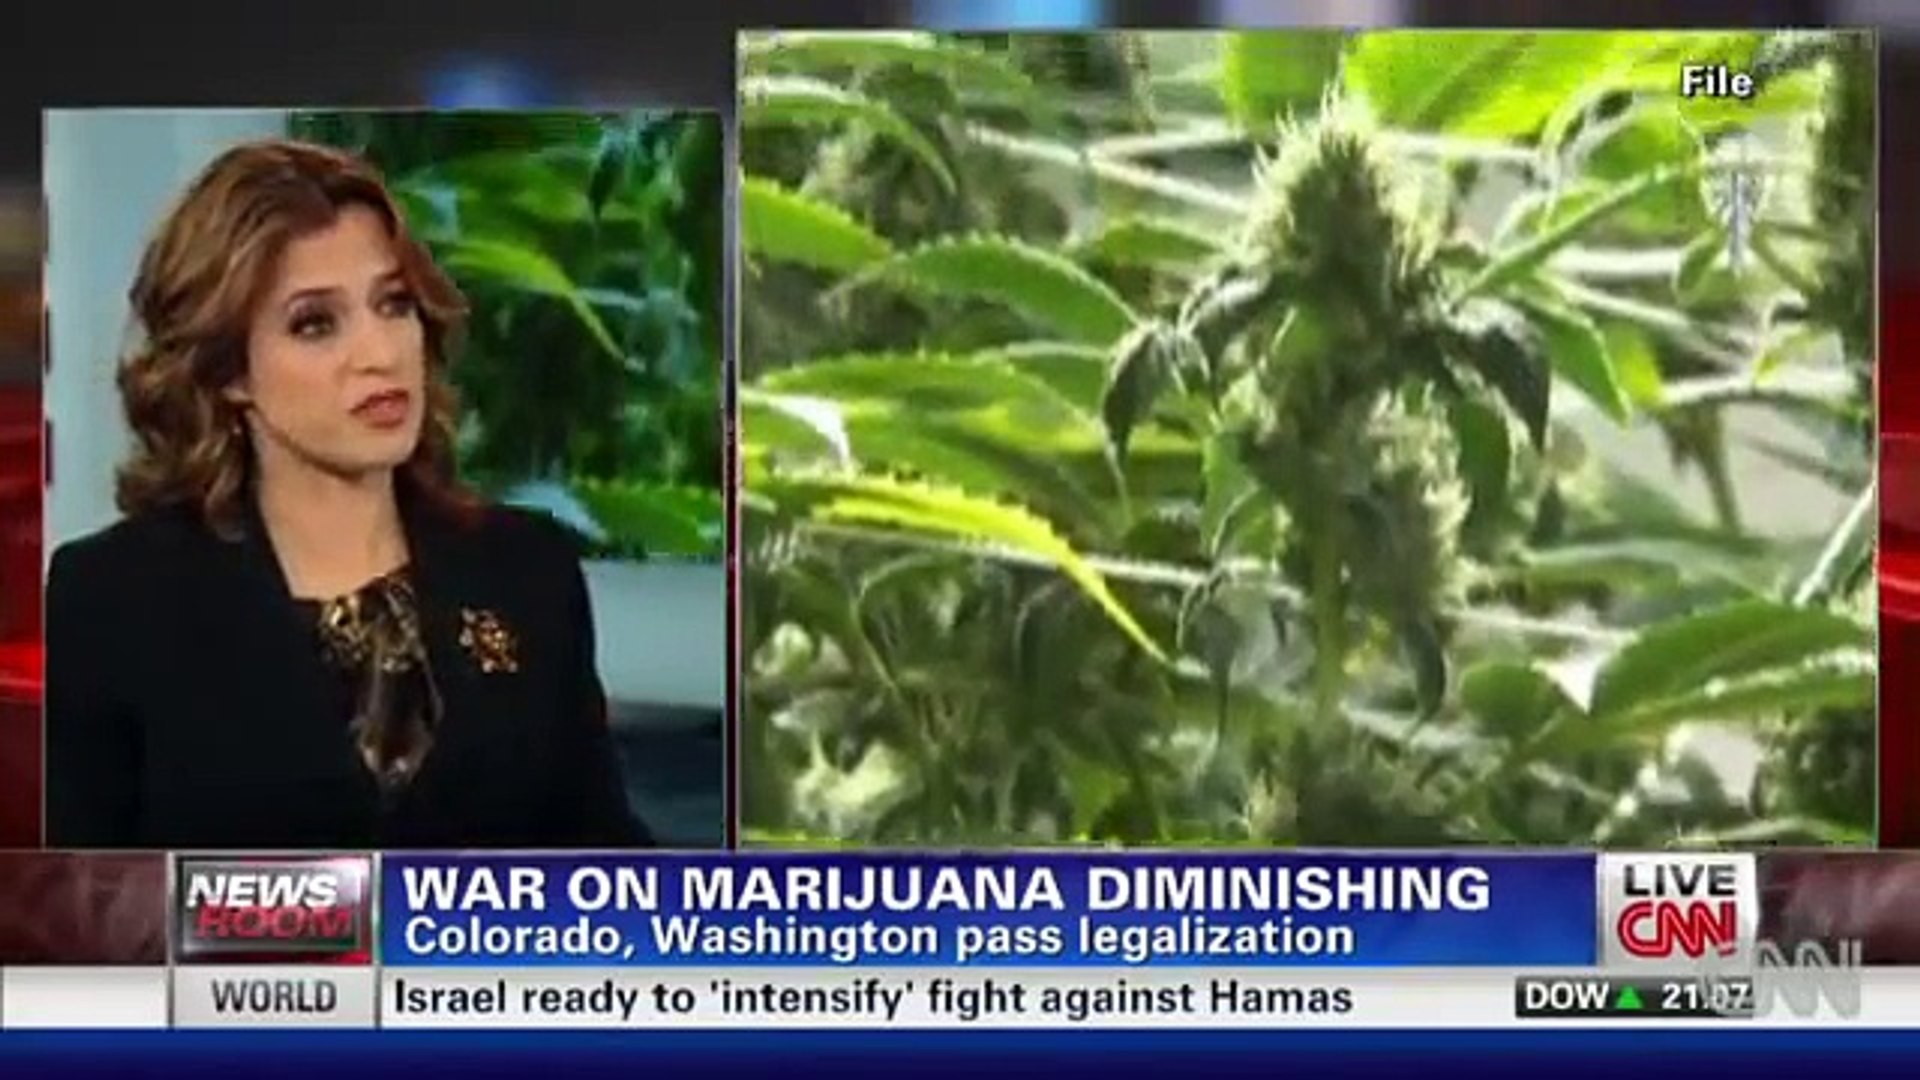 War on marijuana diminishing